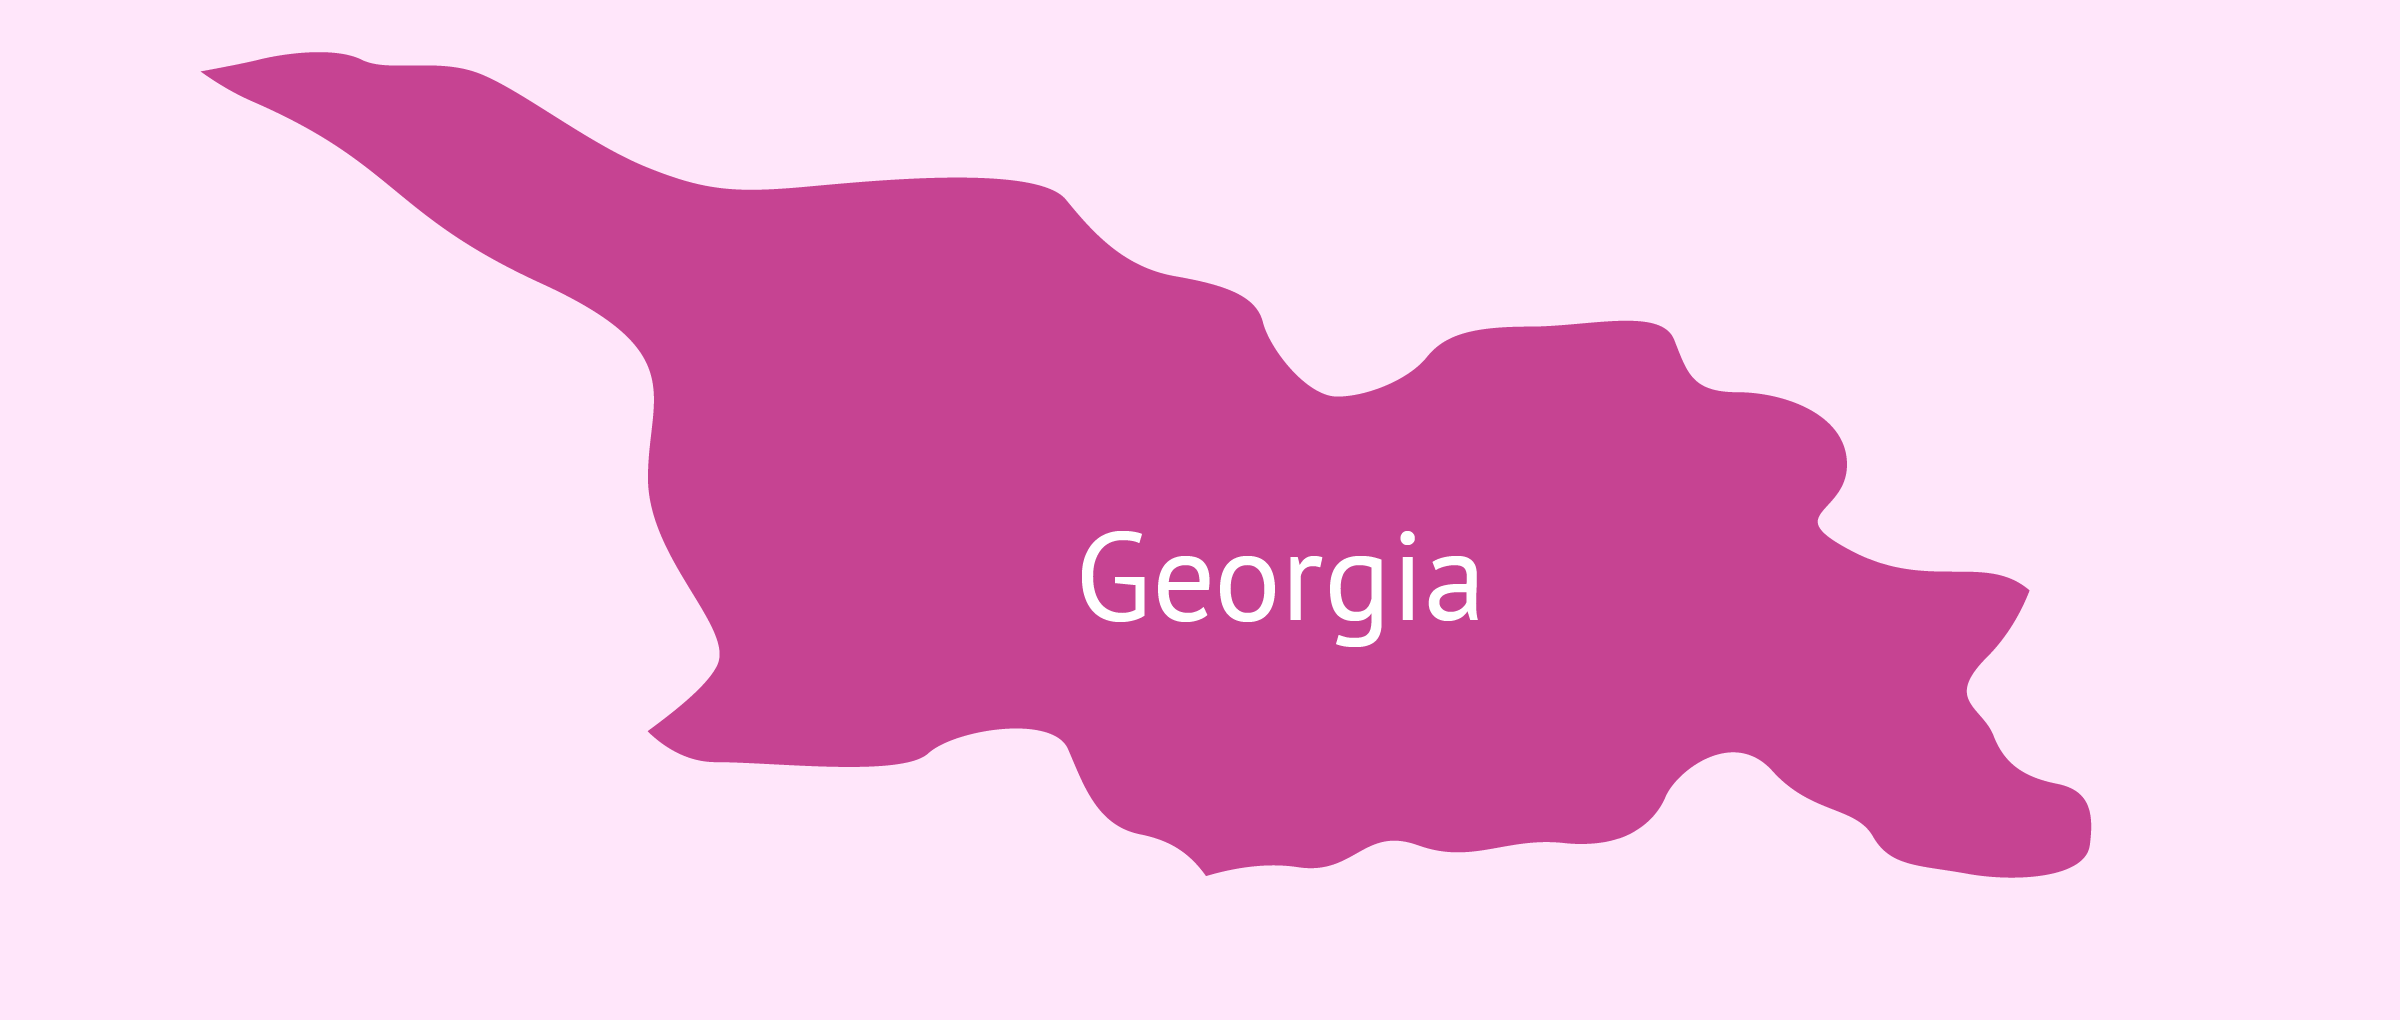 Gestación subrogada en Georgia: condiciones legales y precio